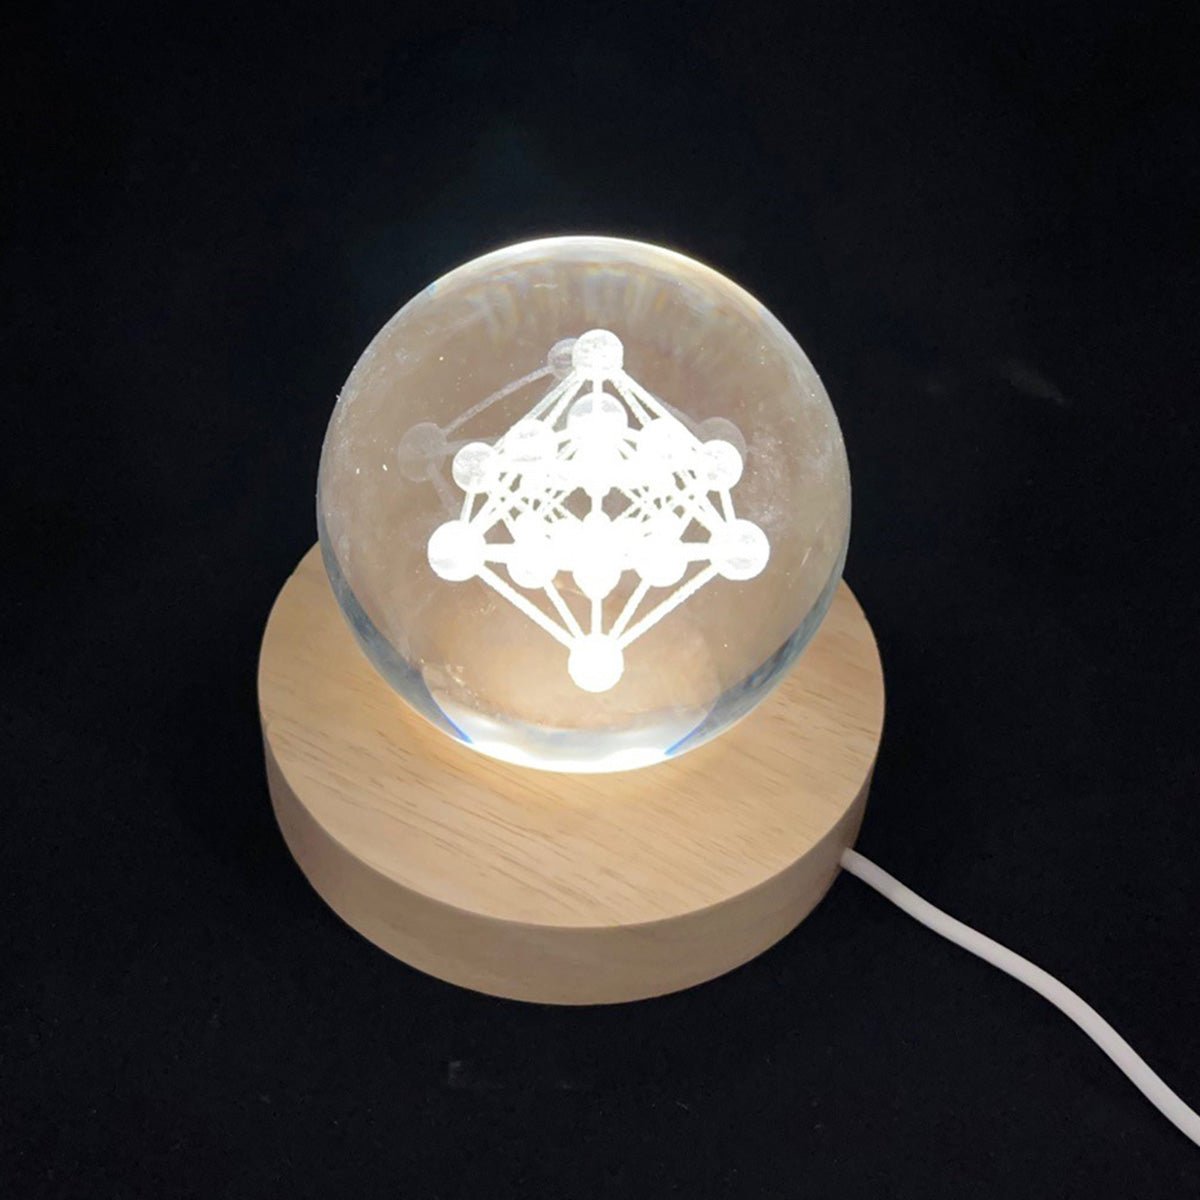 Lumière en boule de verre Metatron, géométrie sacrée - Boutique Equinoxe